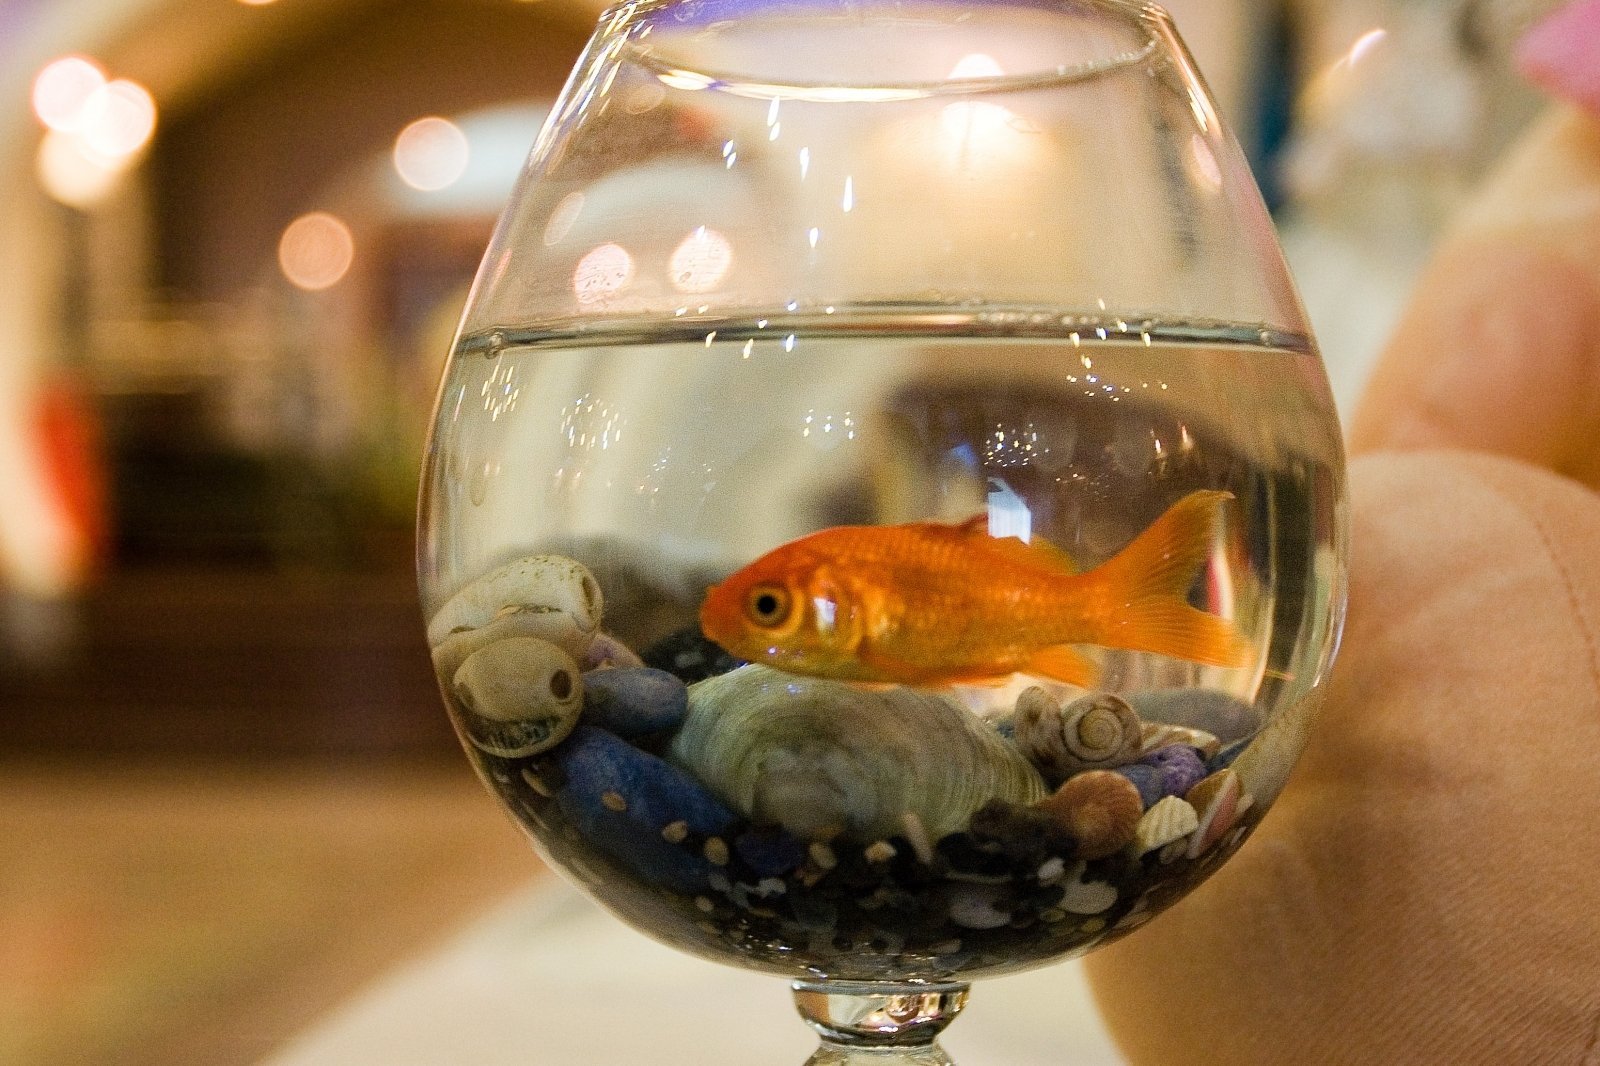 Исследование аквариумных рыбок какая наука. Круглый аквариум с рыбками. Золотая рыбка в аквариуме. Рыба в круглом аквариуме. Одна рыбка в круглом аквариуме.